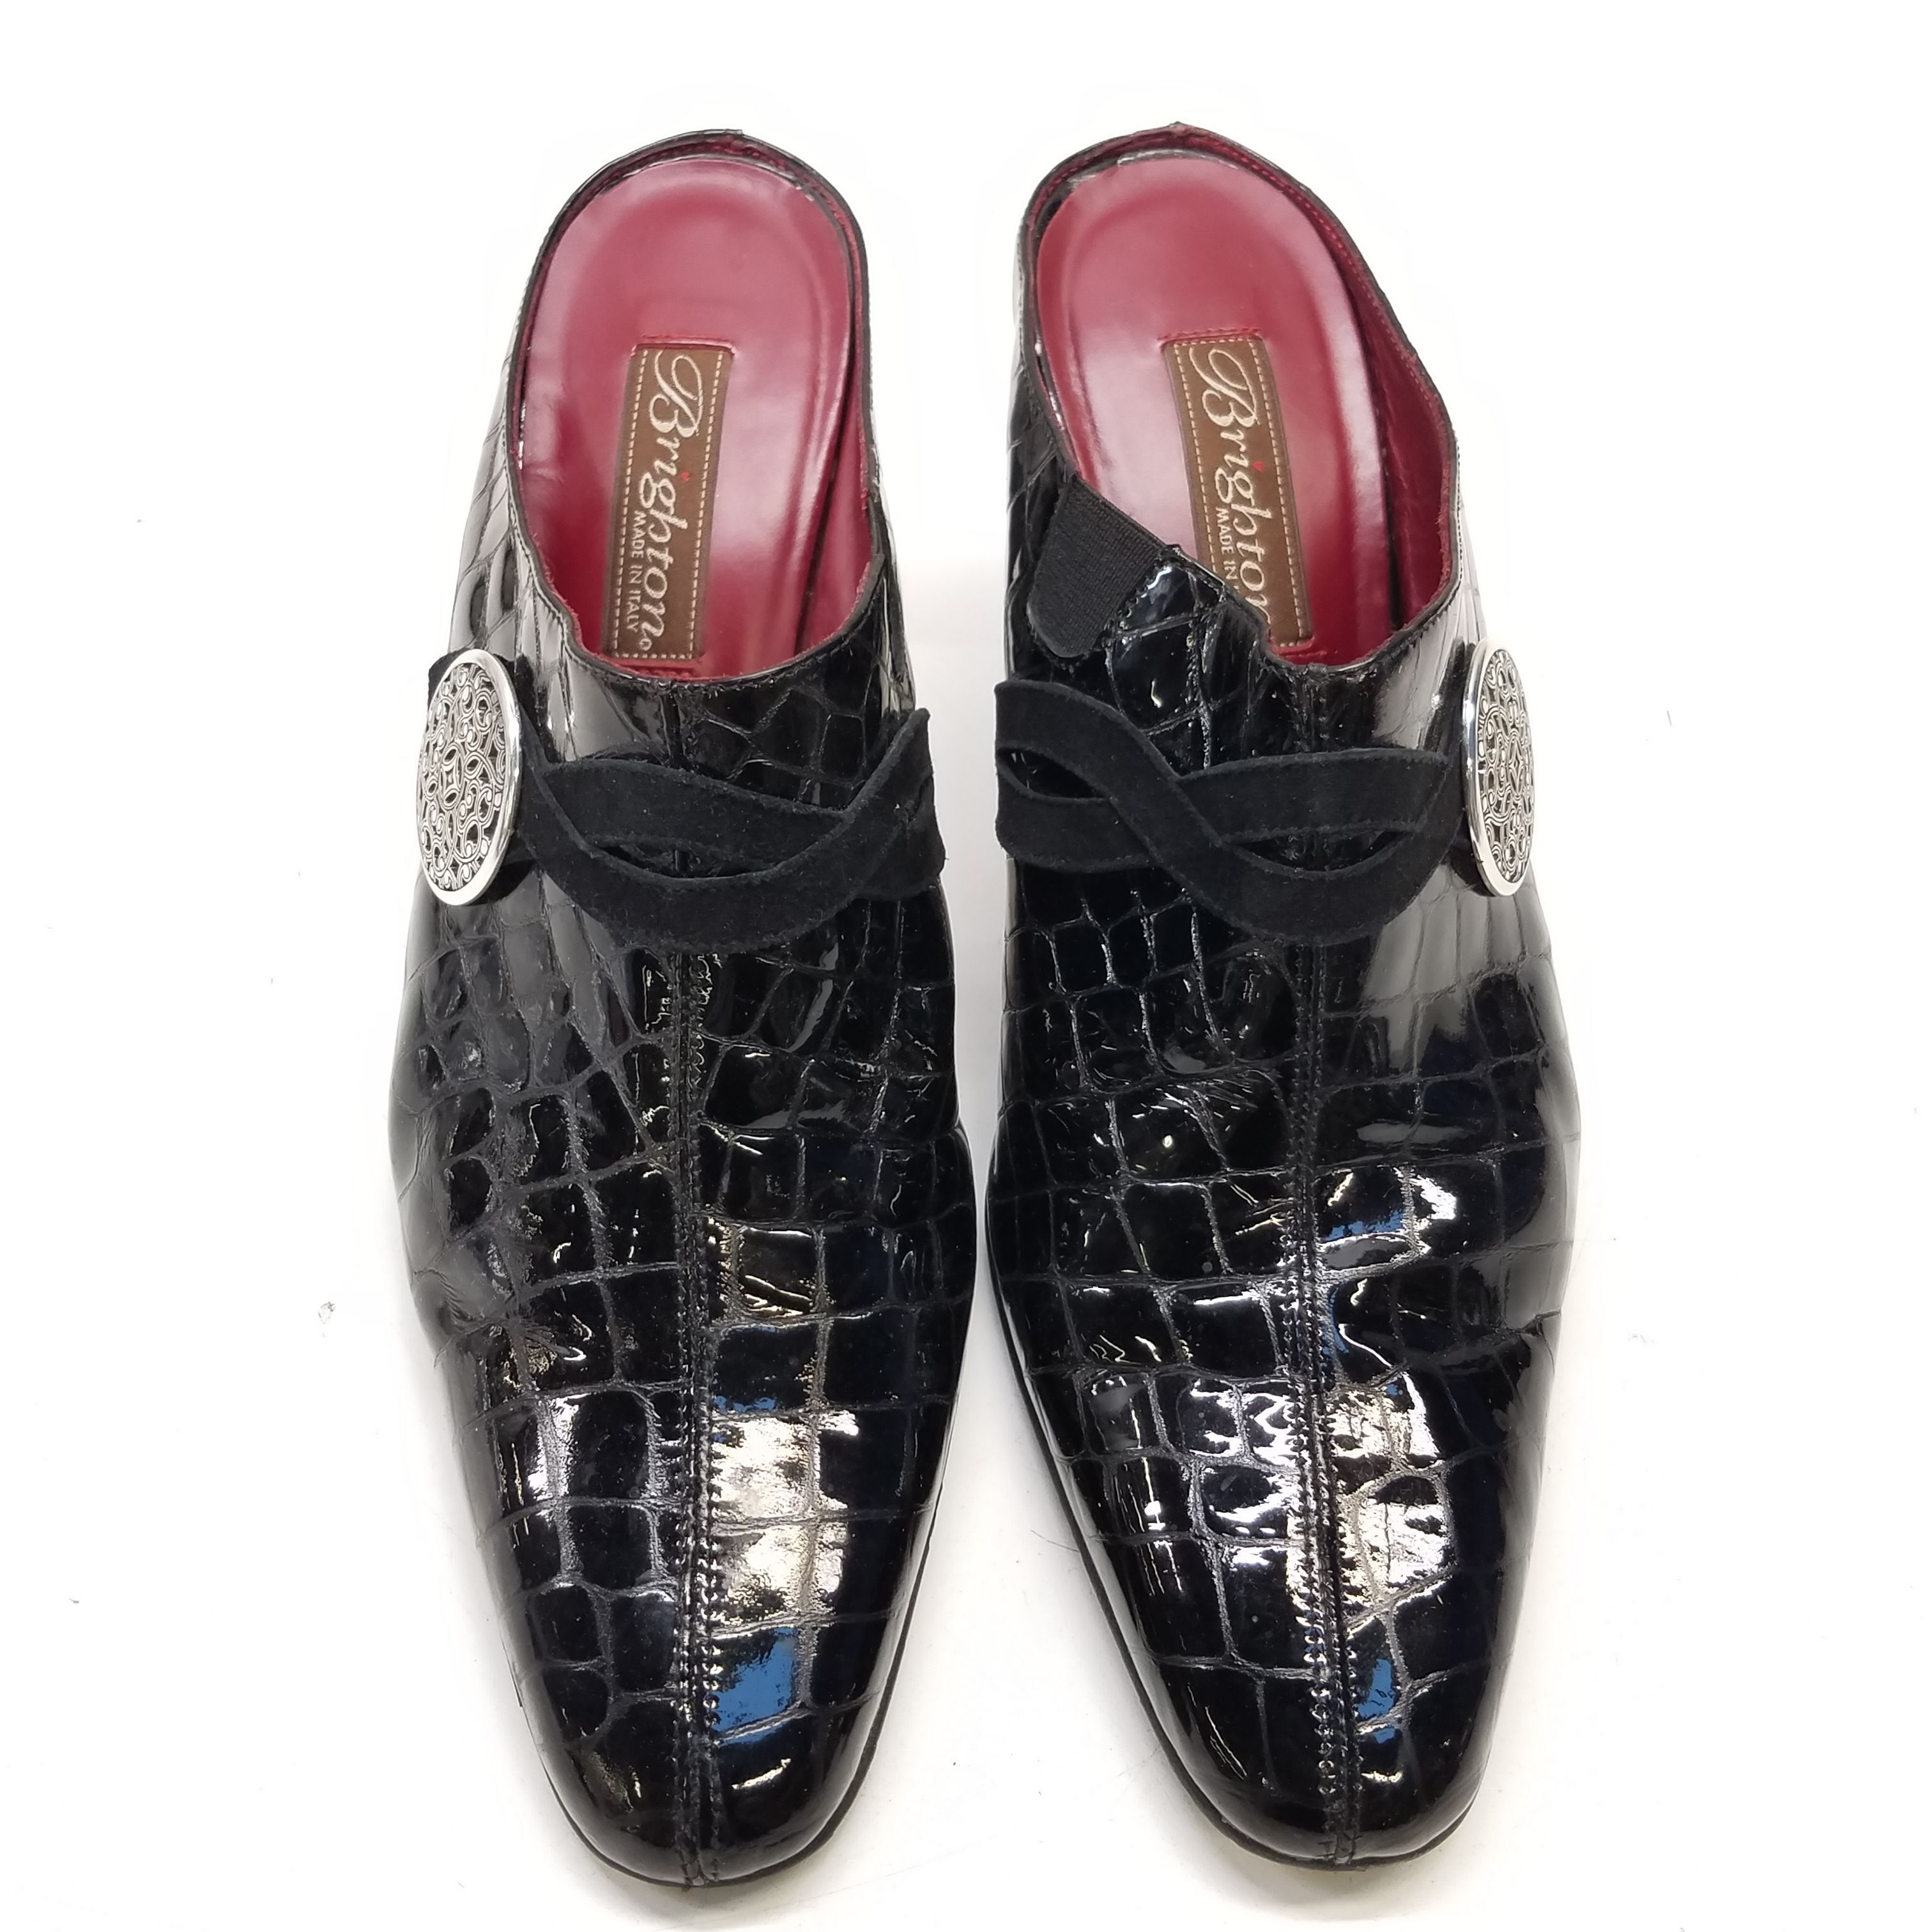 Brighton - Fall Footwear Edit - Brighton Fresco Closed Dress Shoes: Size:  6.5, Width:N Black-Caramel